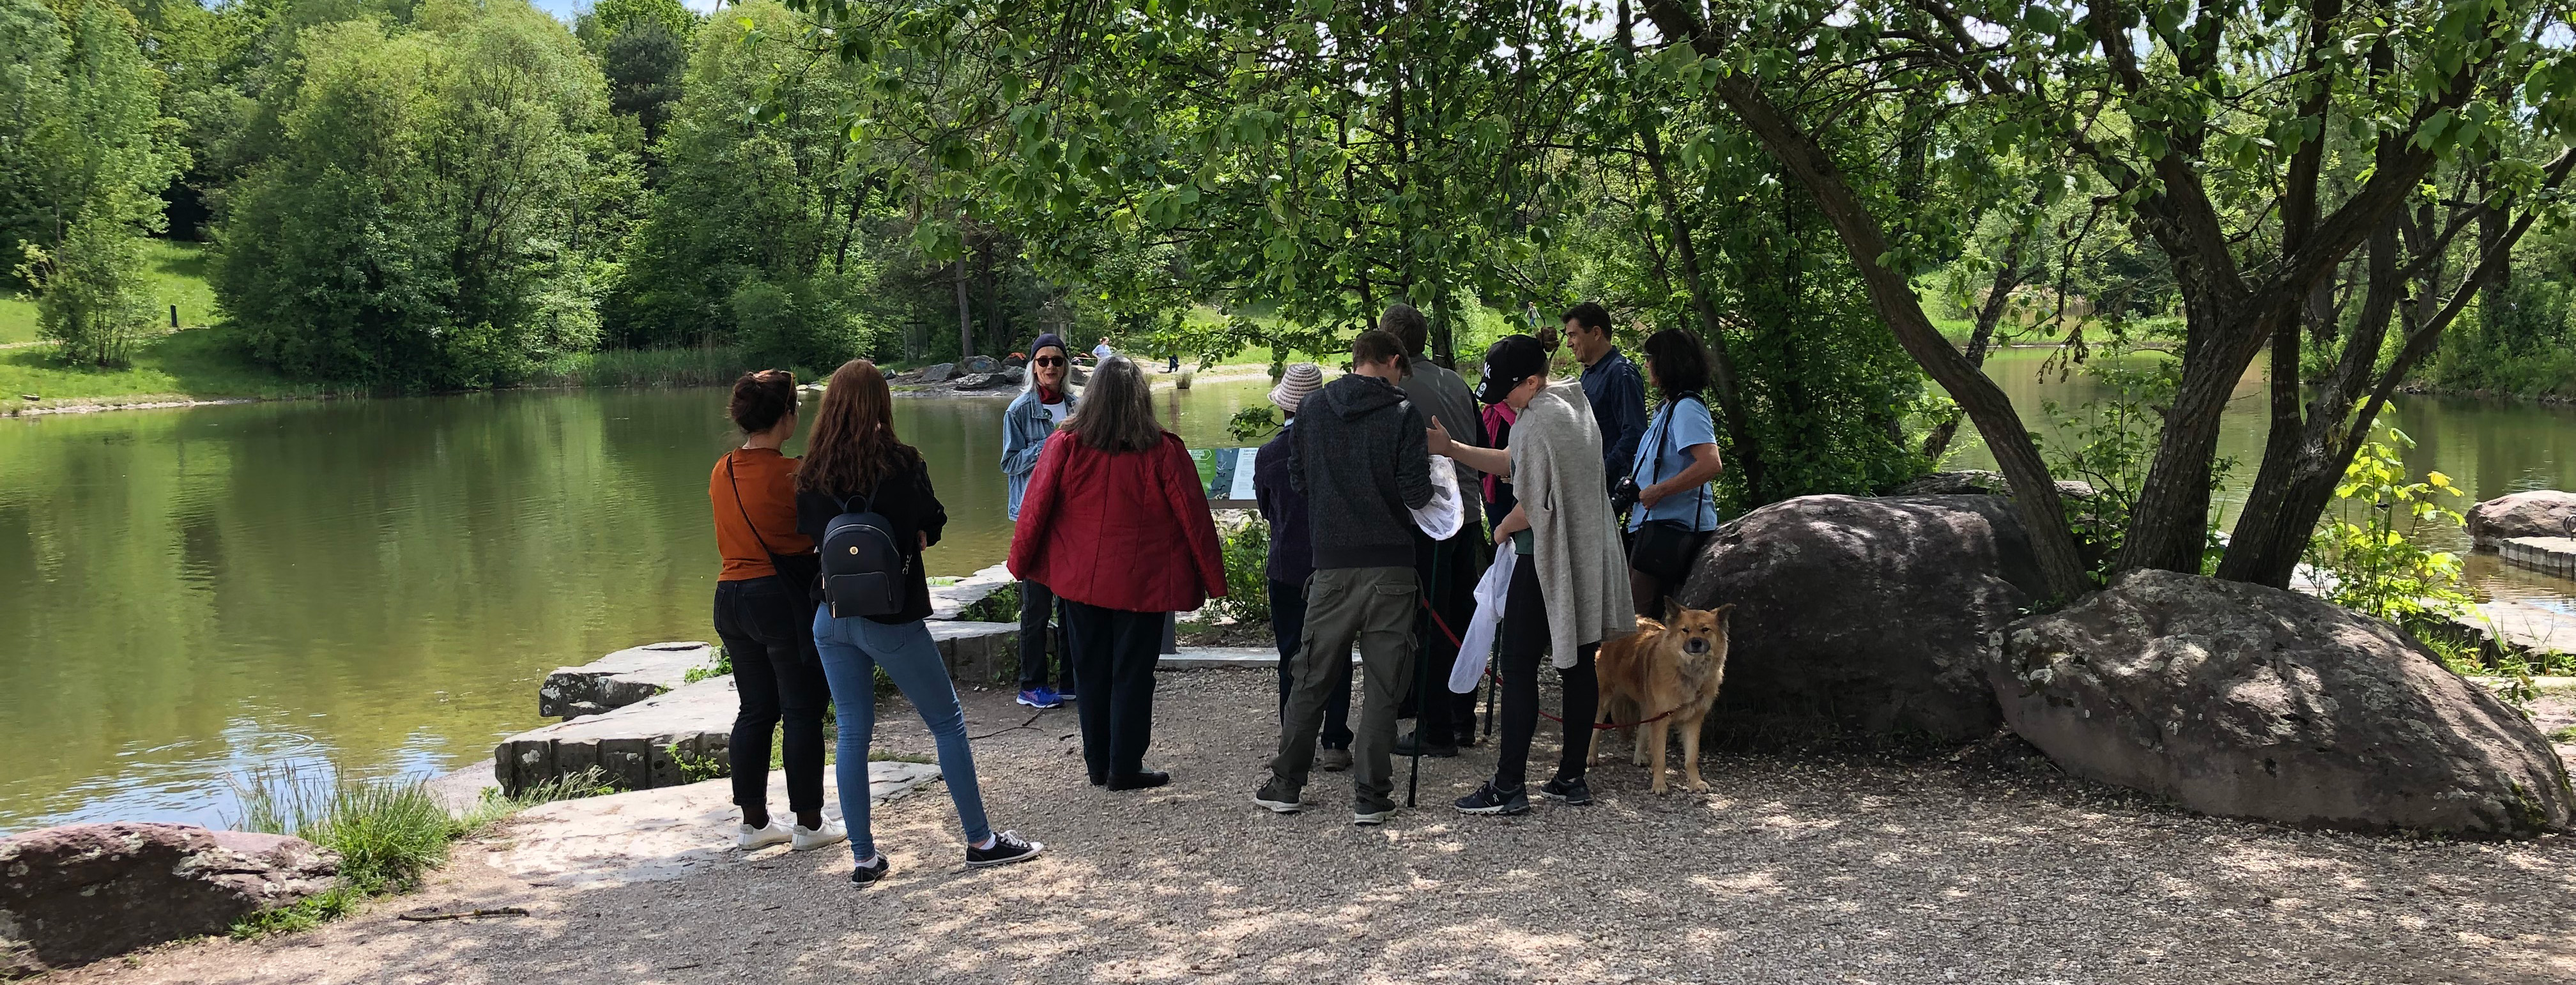 Personengruppe mit Hund, an einer Führung durch den Irchel Nature Park.